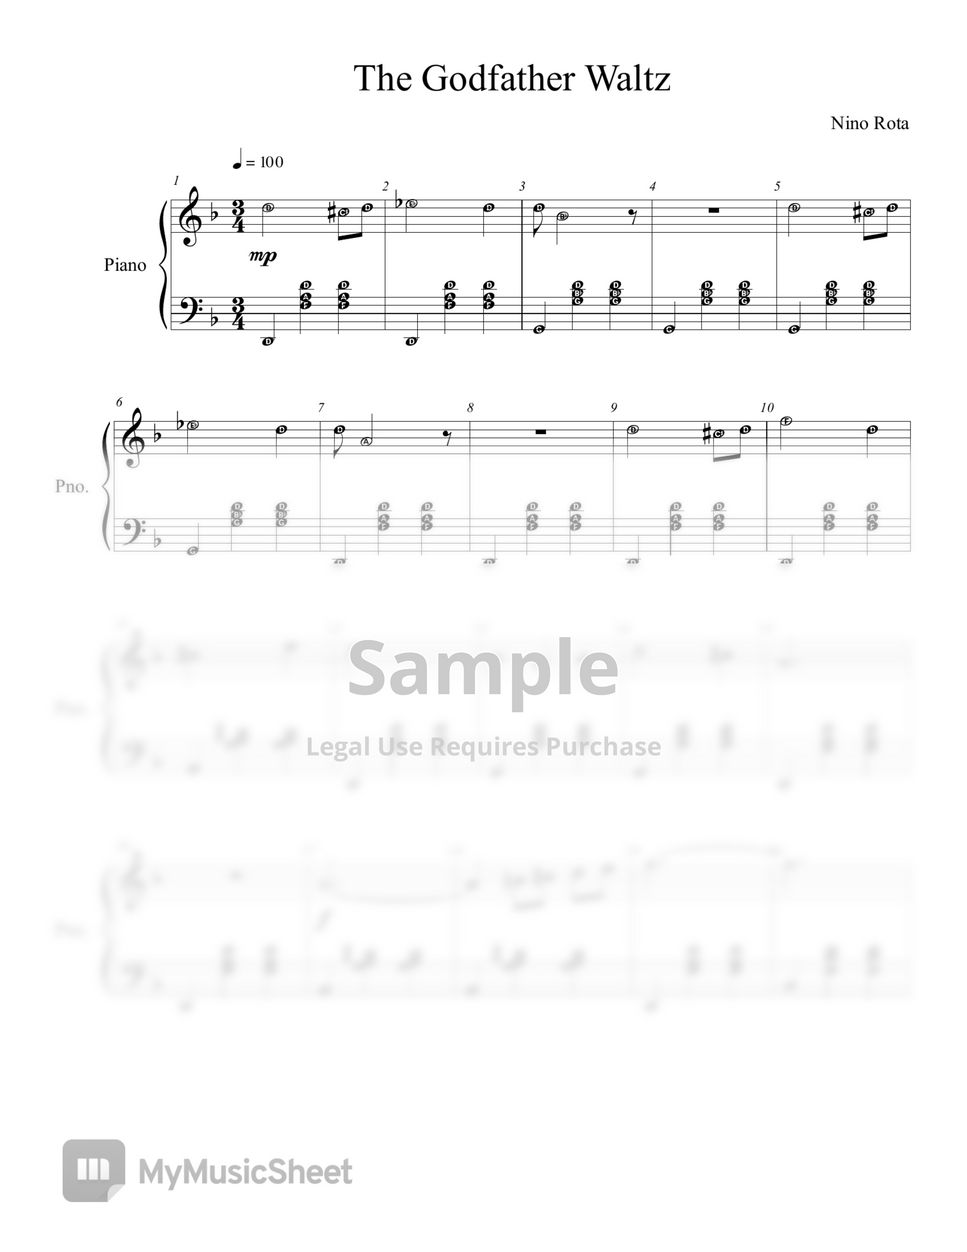 Nino Rota - The Godfather Waltz by MIDI Steinway